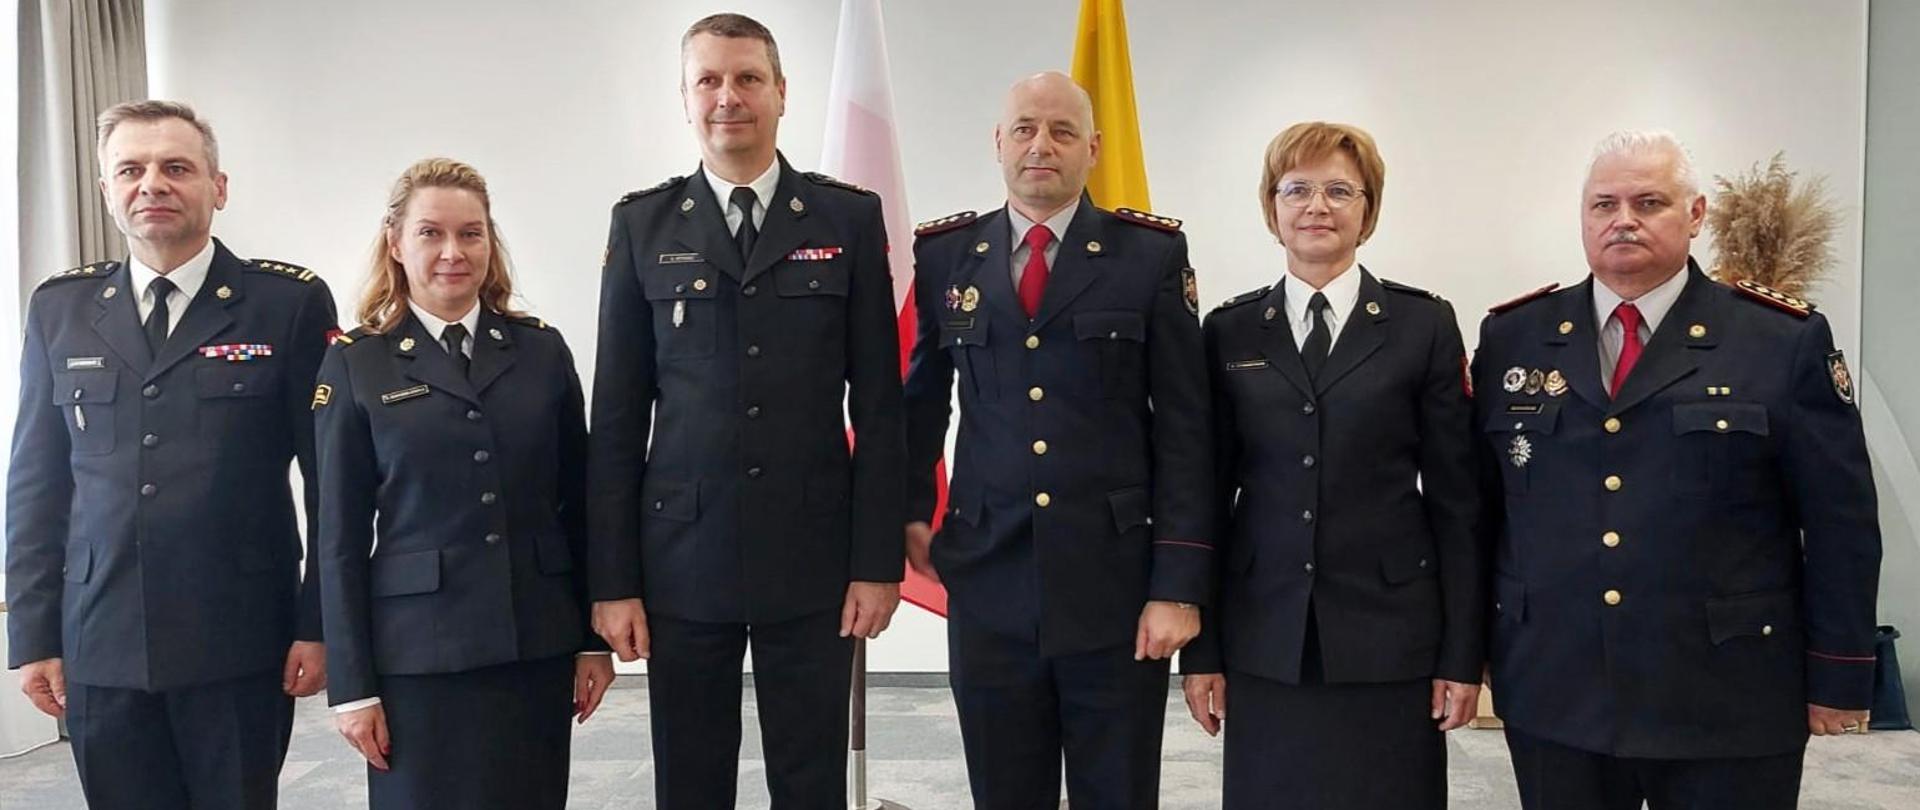 6 strażaków z Polski i Litwy w tym dwie kobiety, wszyscy w mundurach galowych